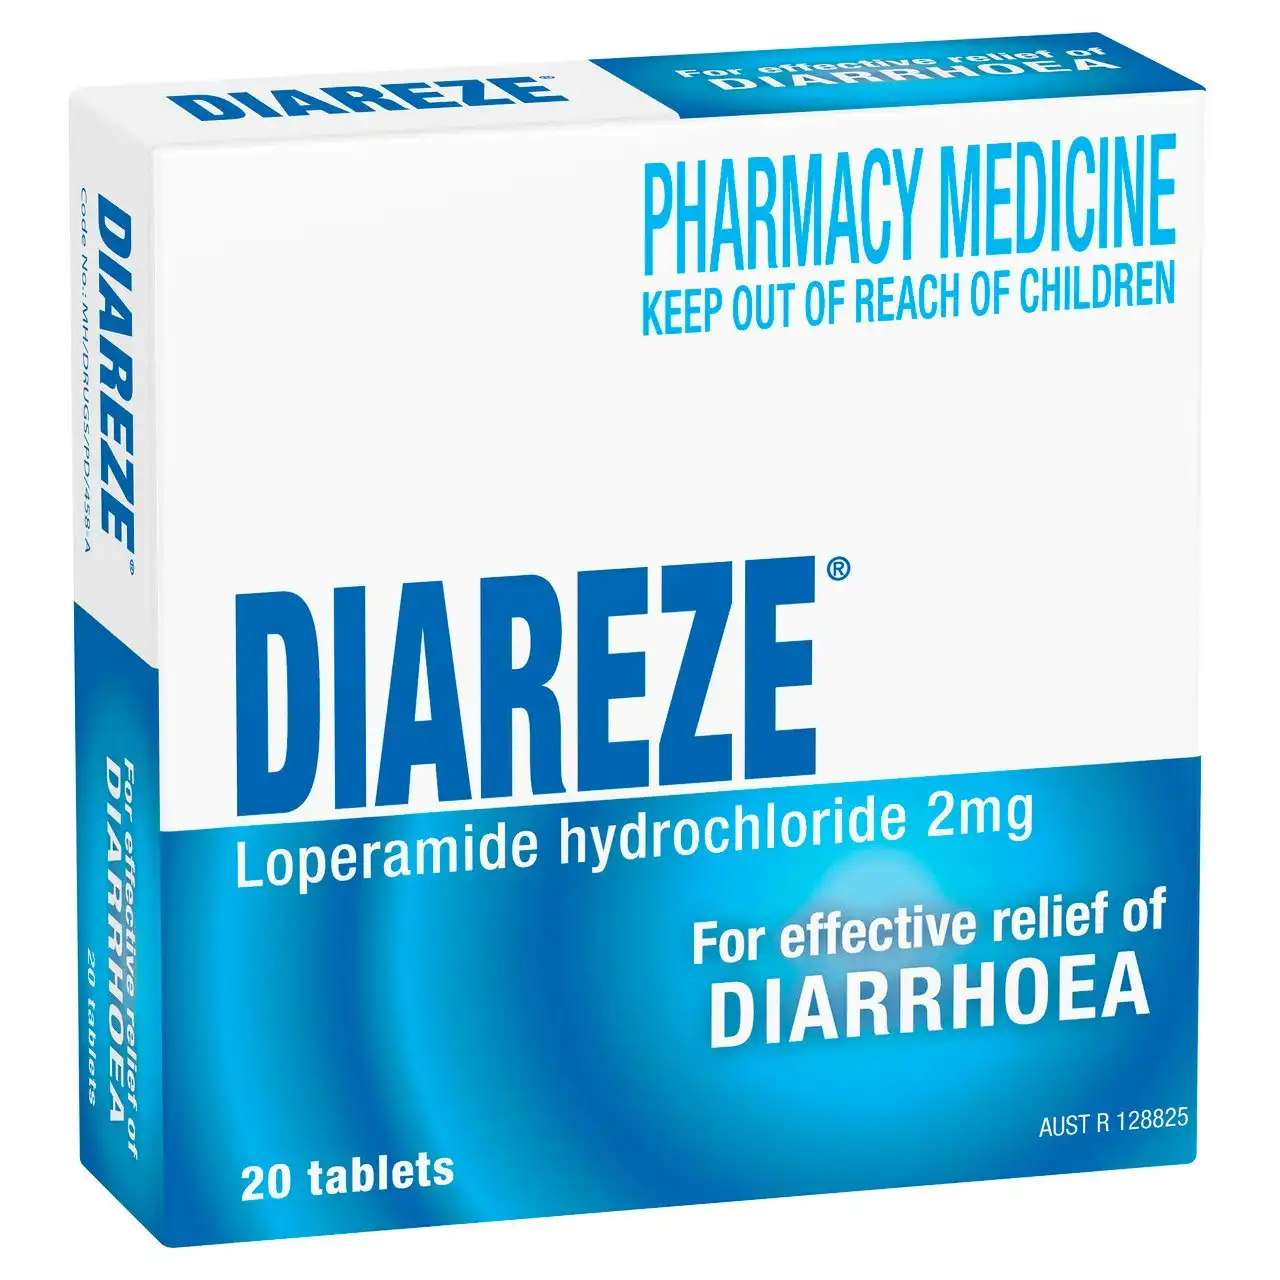 Diareze Tablets 20's